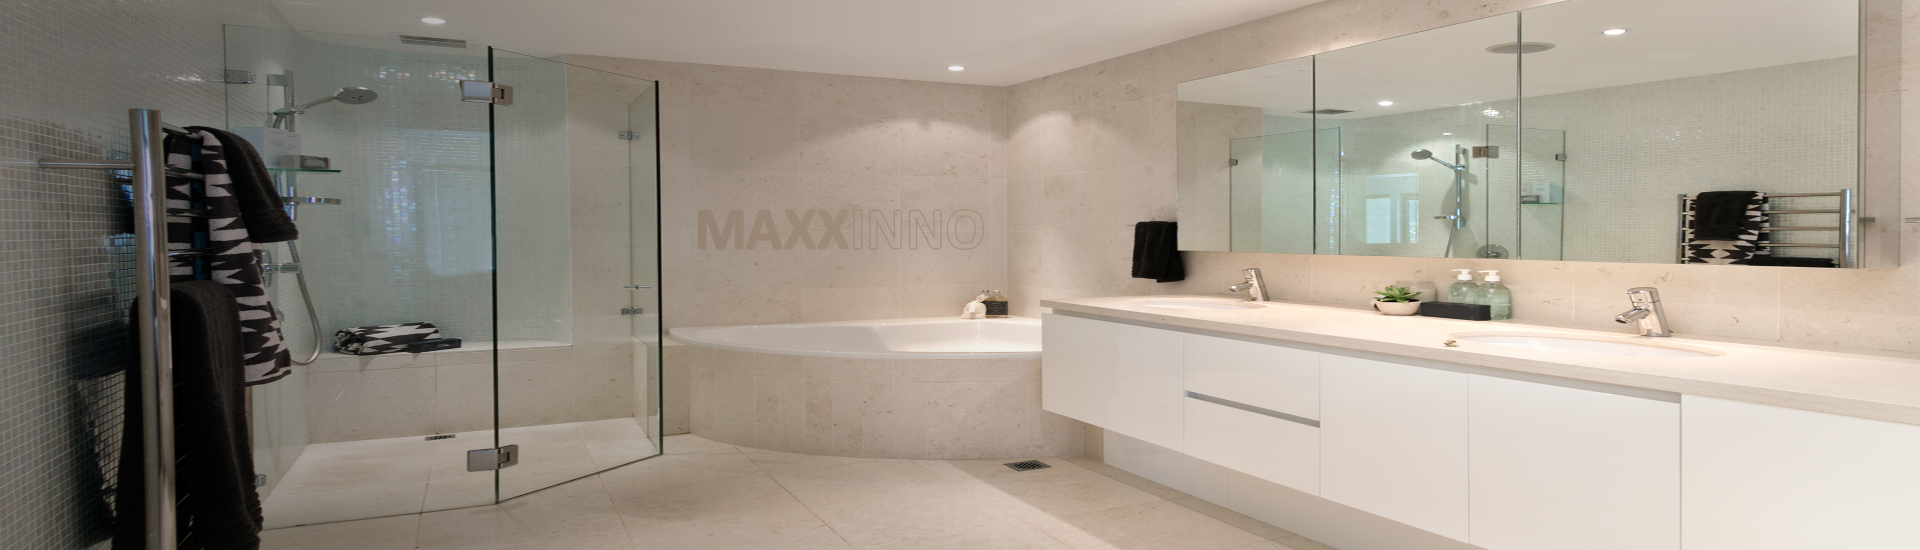 Energieverbruik van infraroodpanelen - breng uw energiekosten omlaag met Maxxinno infraroodverwarming - ook in badkamer